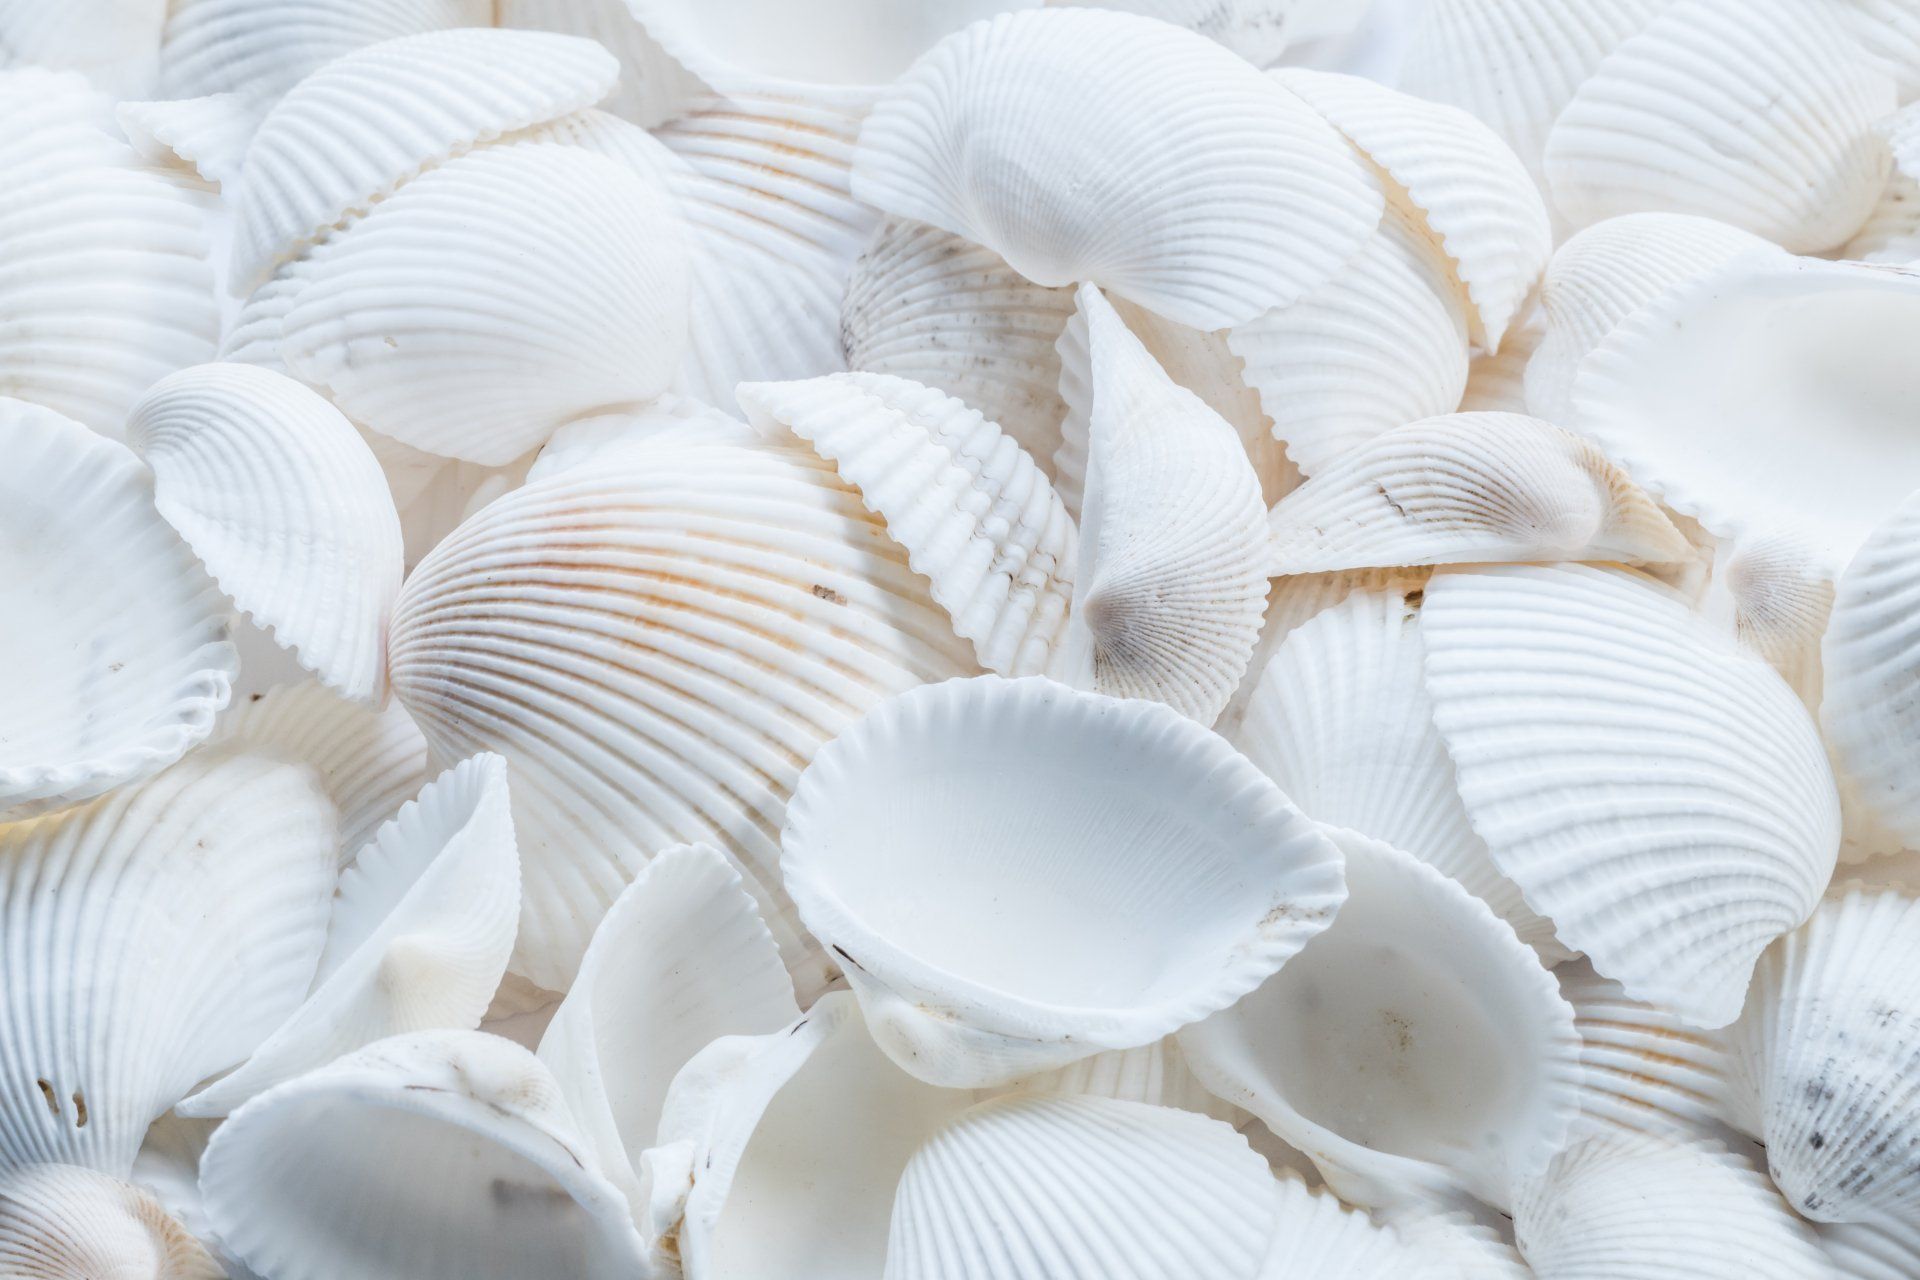 Small white seashells.